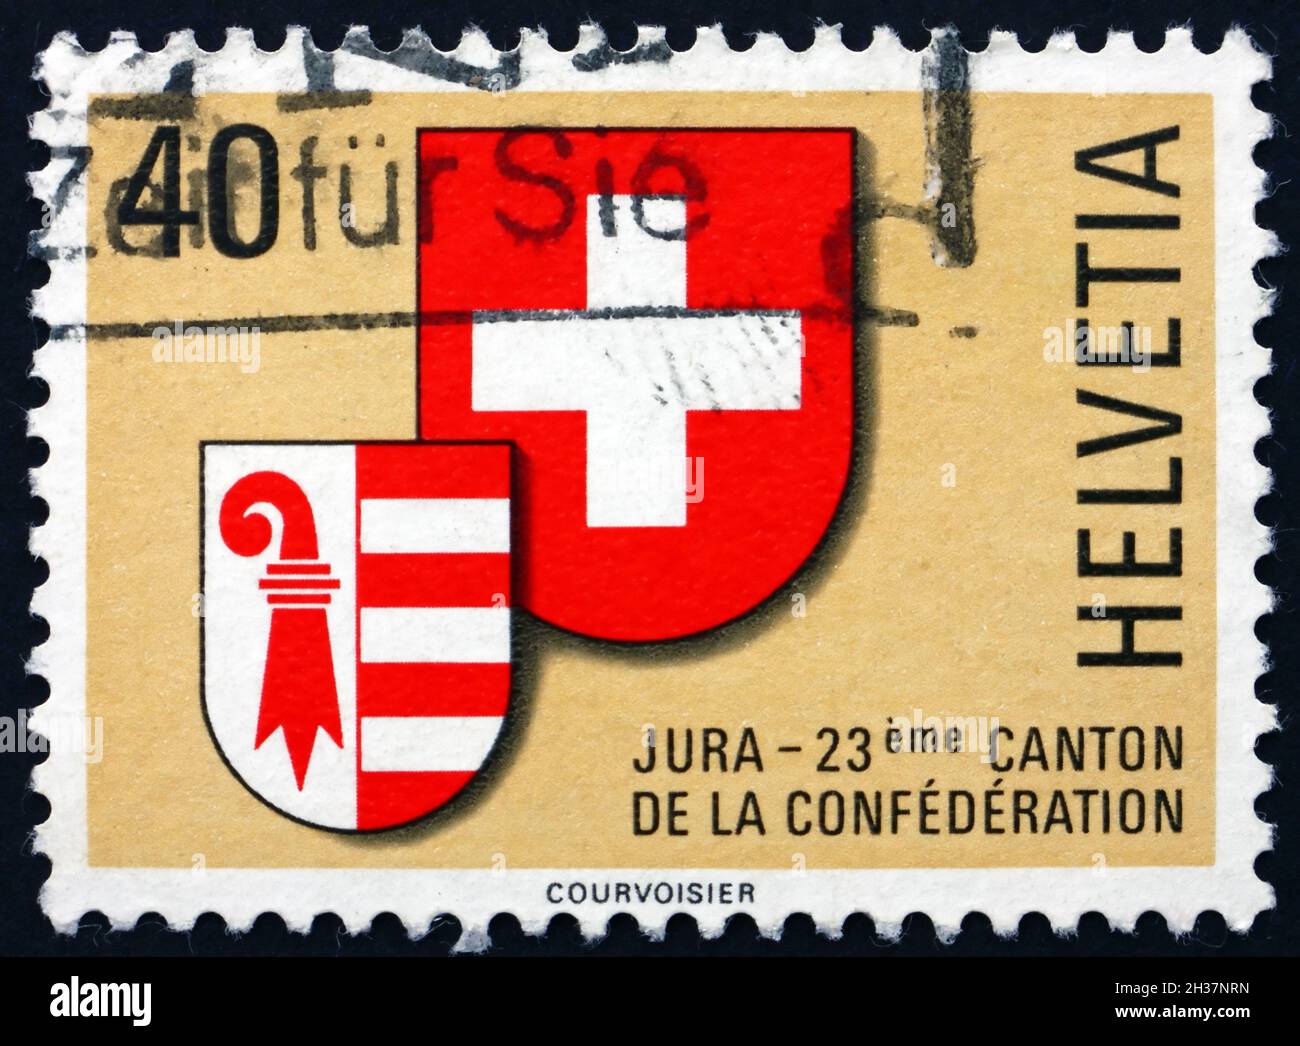 SCHWEIZ - UM 1978: Eine in der Schweiz gedruckte Briefmarke zeigt Wappen der Schweiz und des Jura, Zulassung des Jura als 23. Kanton, um 1978 Stockfoto